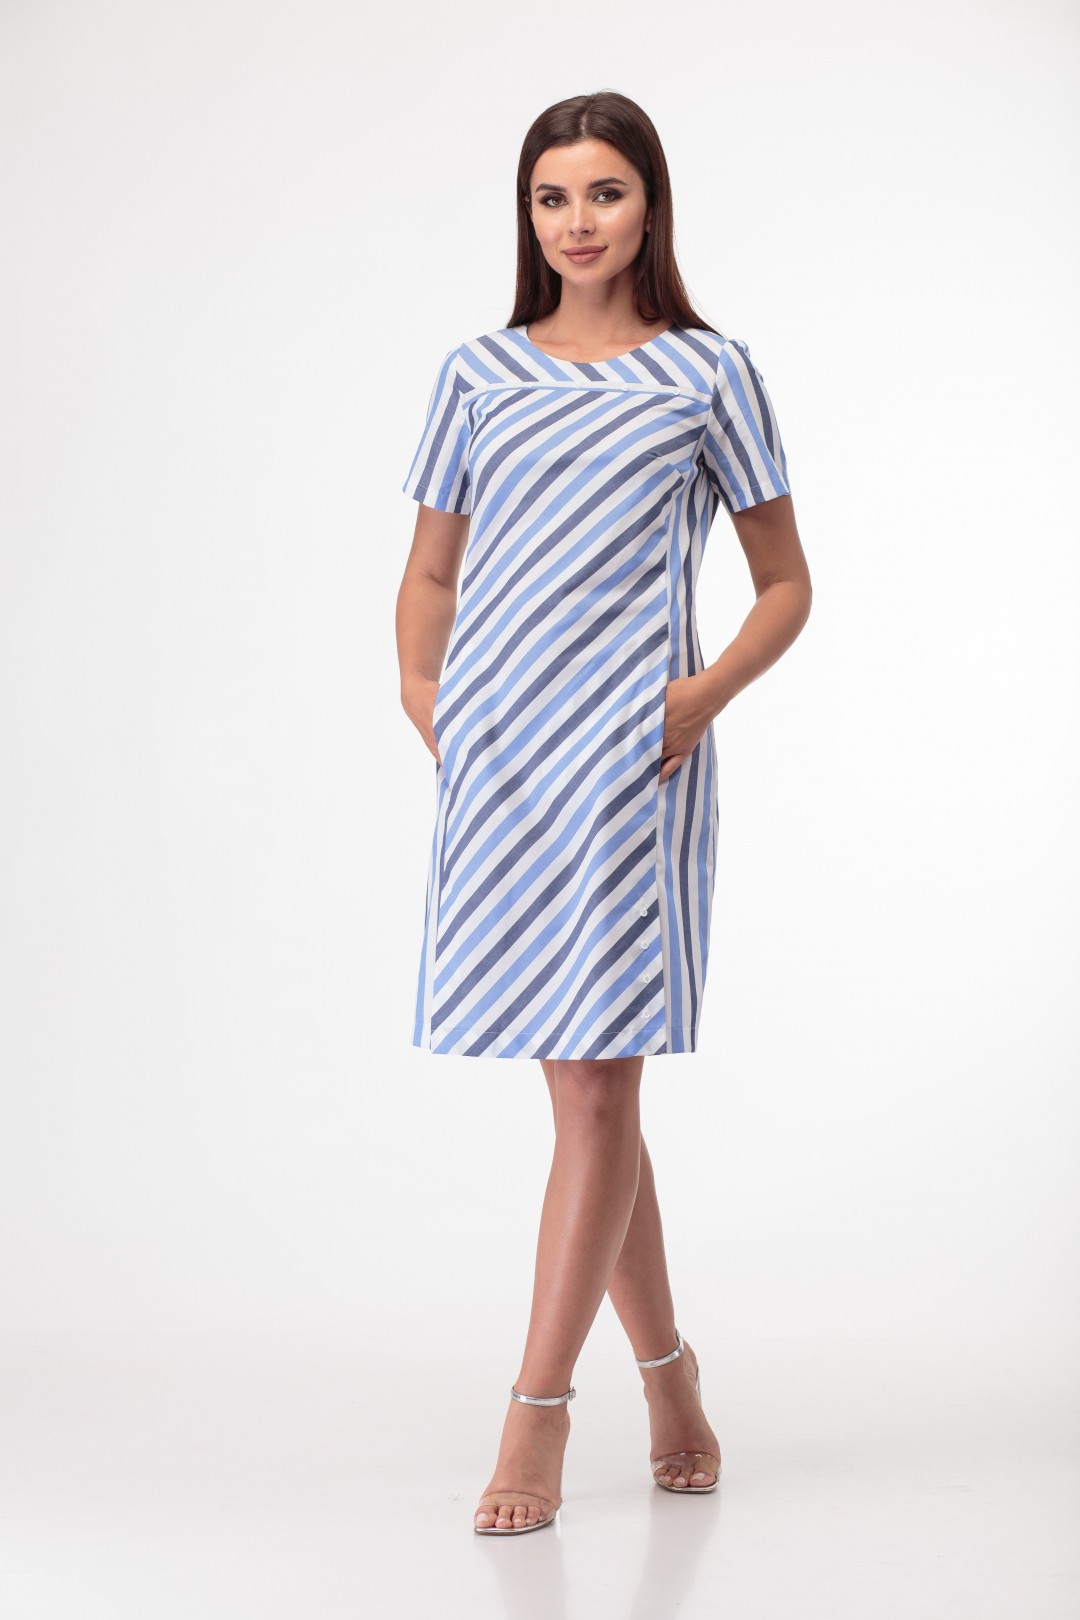 Платье Anelli 853 синие тона, широкая полоска